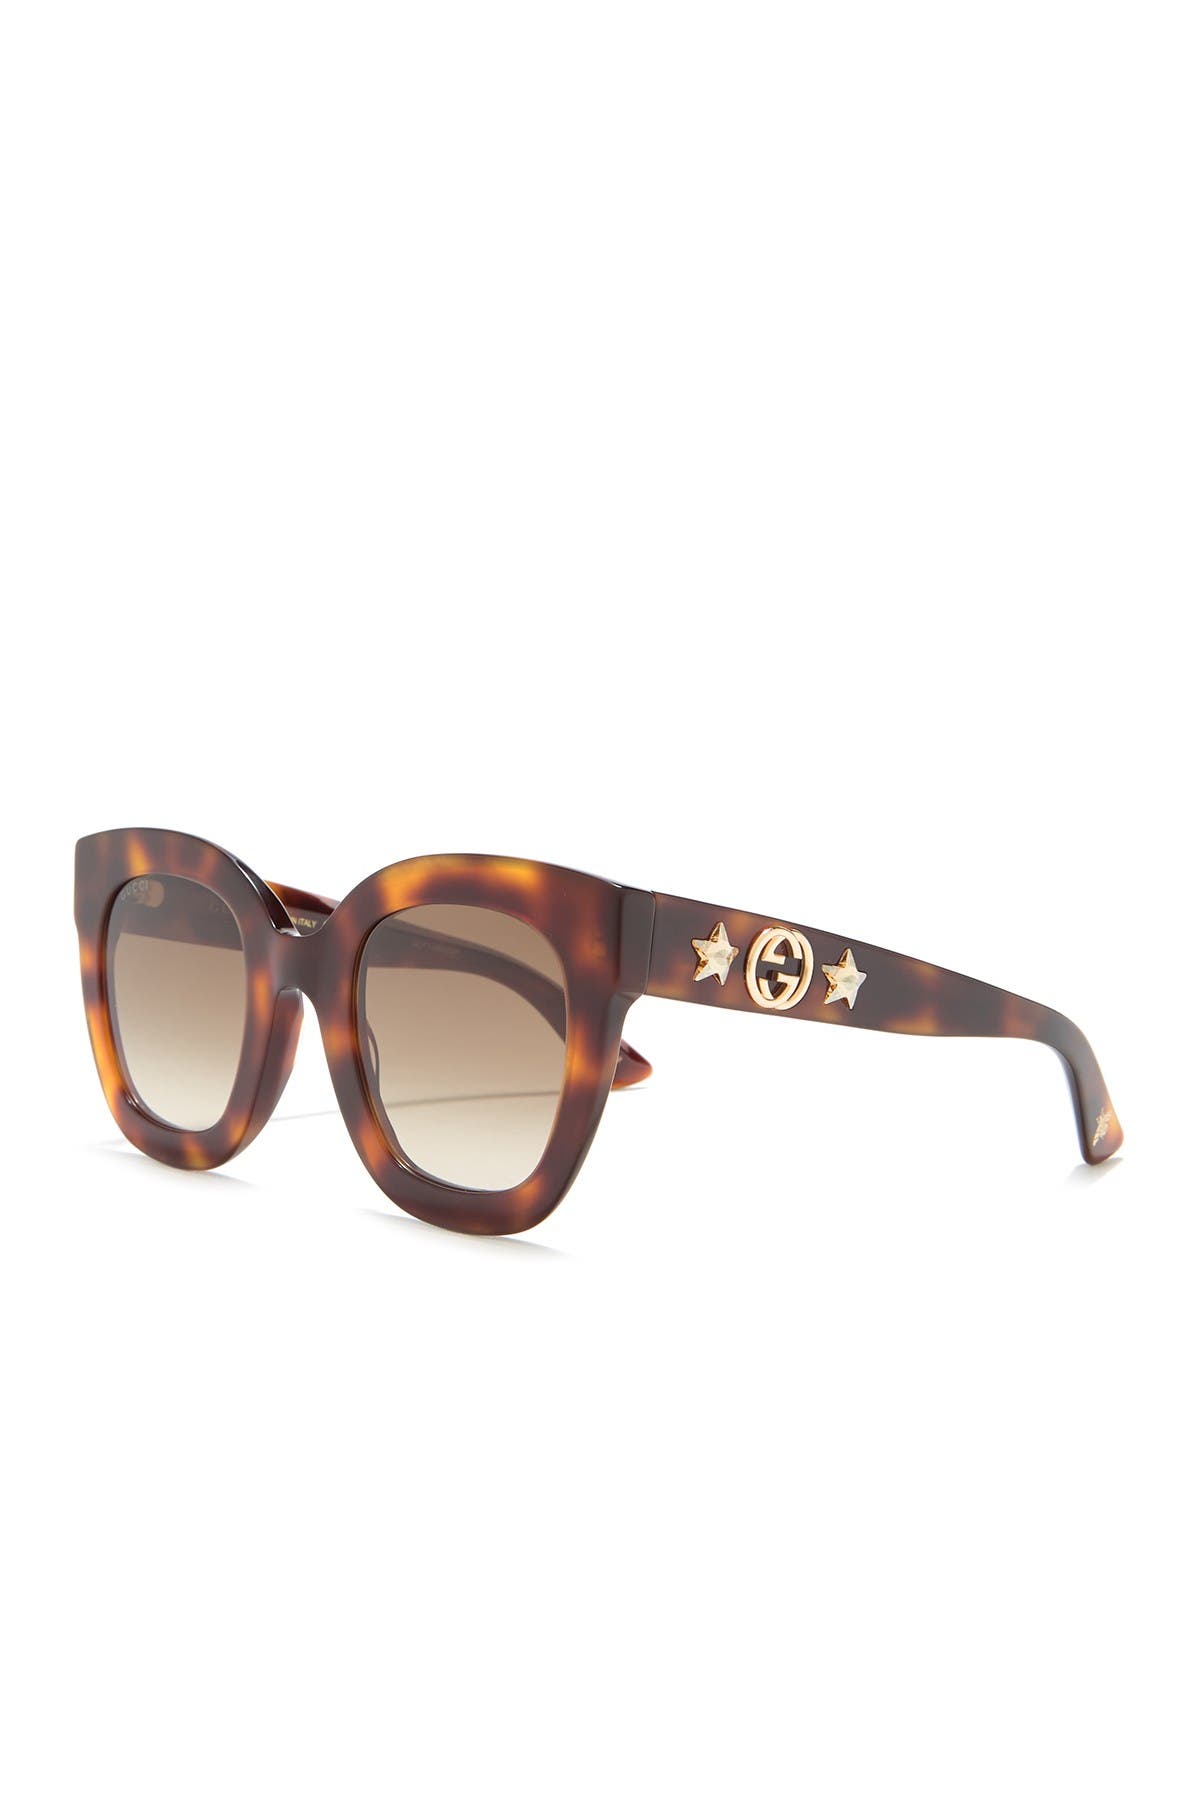 gucci 49mm cat eye sunglasses